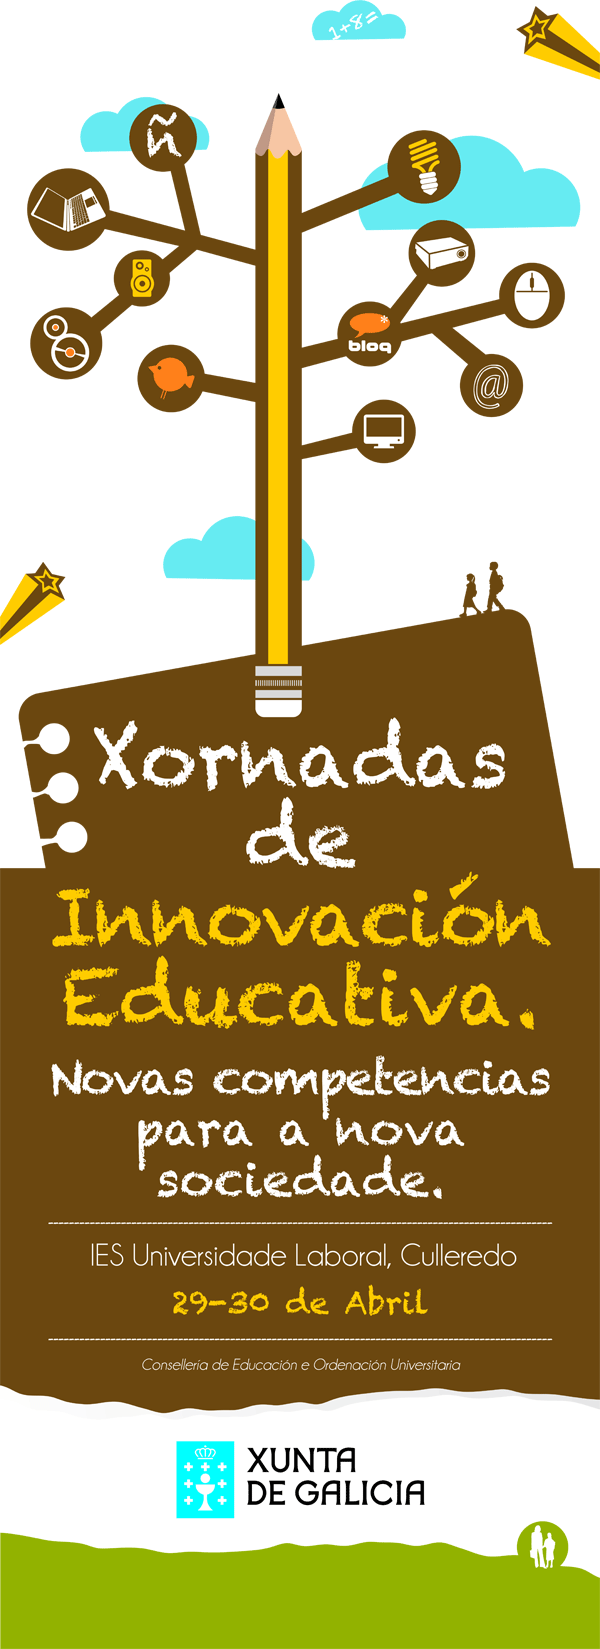 Xunta Galicia Innovación Educativa 7